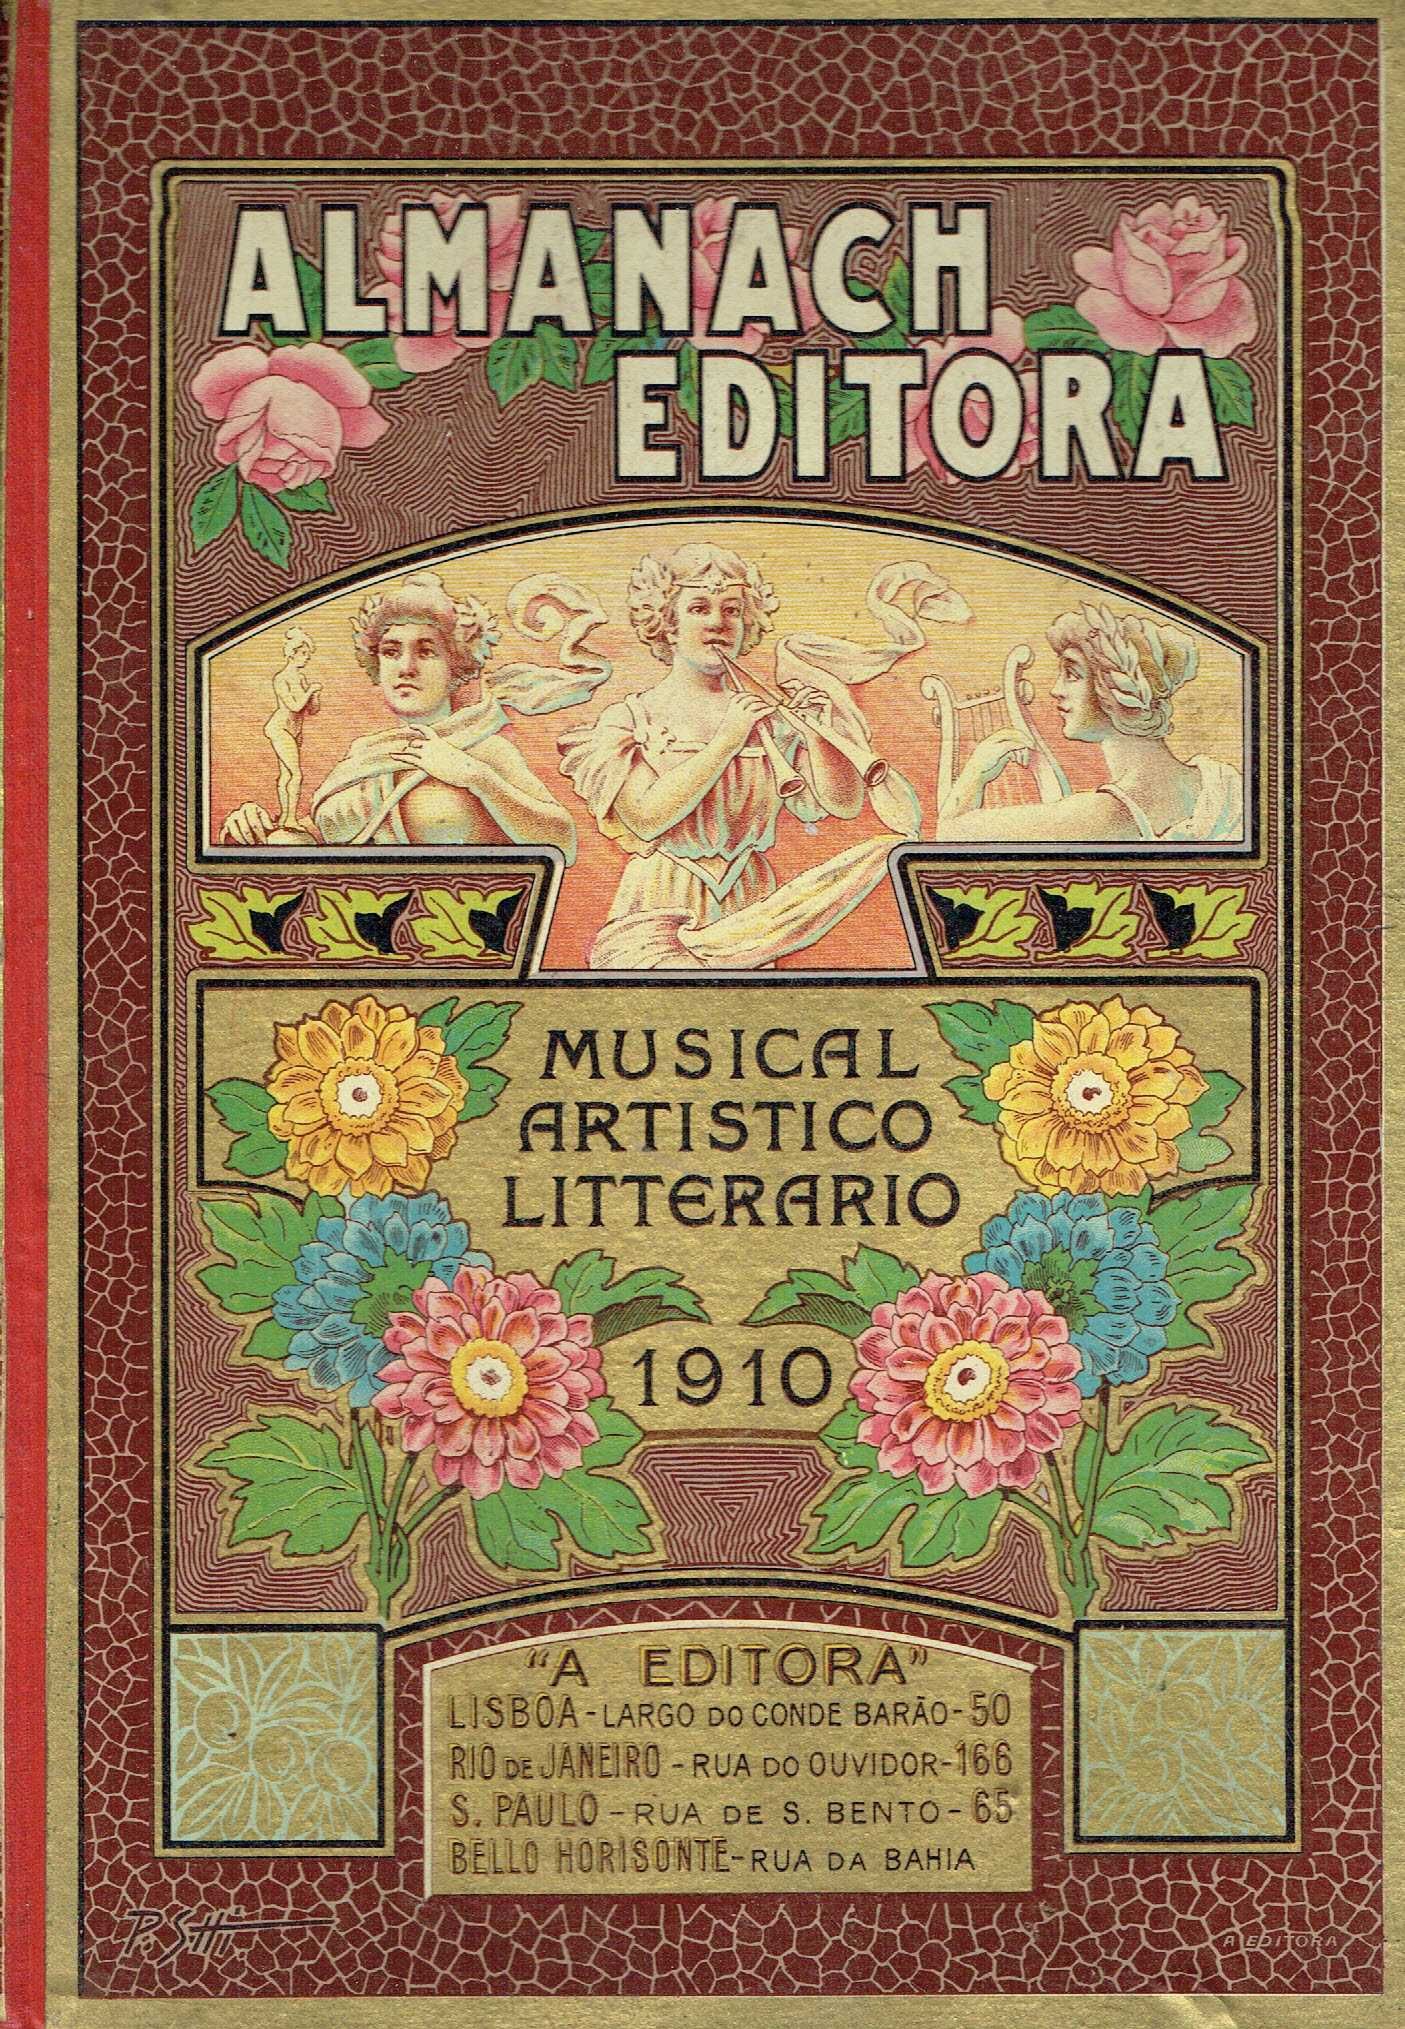 12261

Almanach Editora - Musical Artistico Litterario 1910